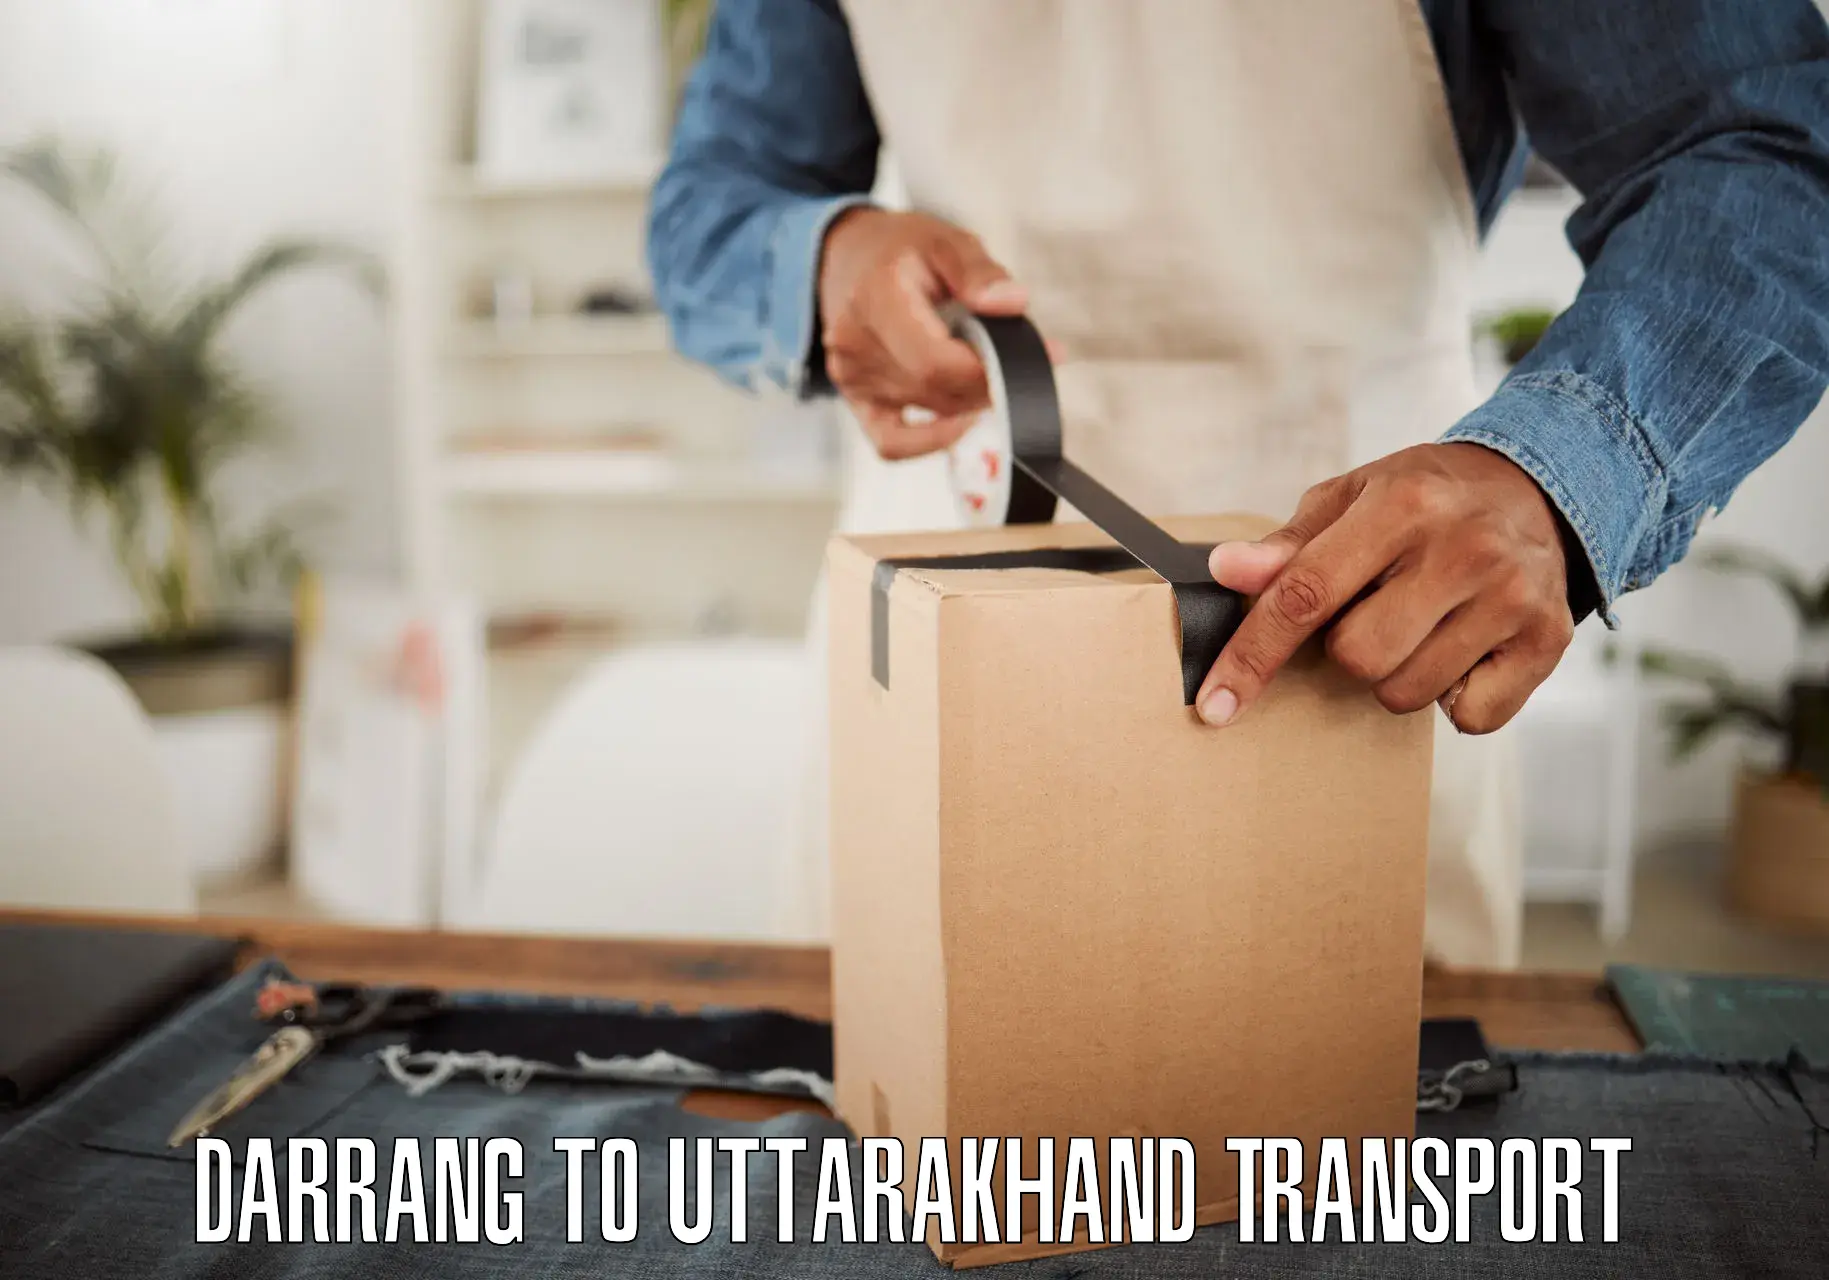 Transport in sharing Darrang to Uttarakhand